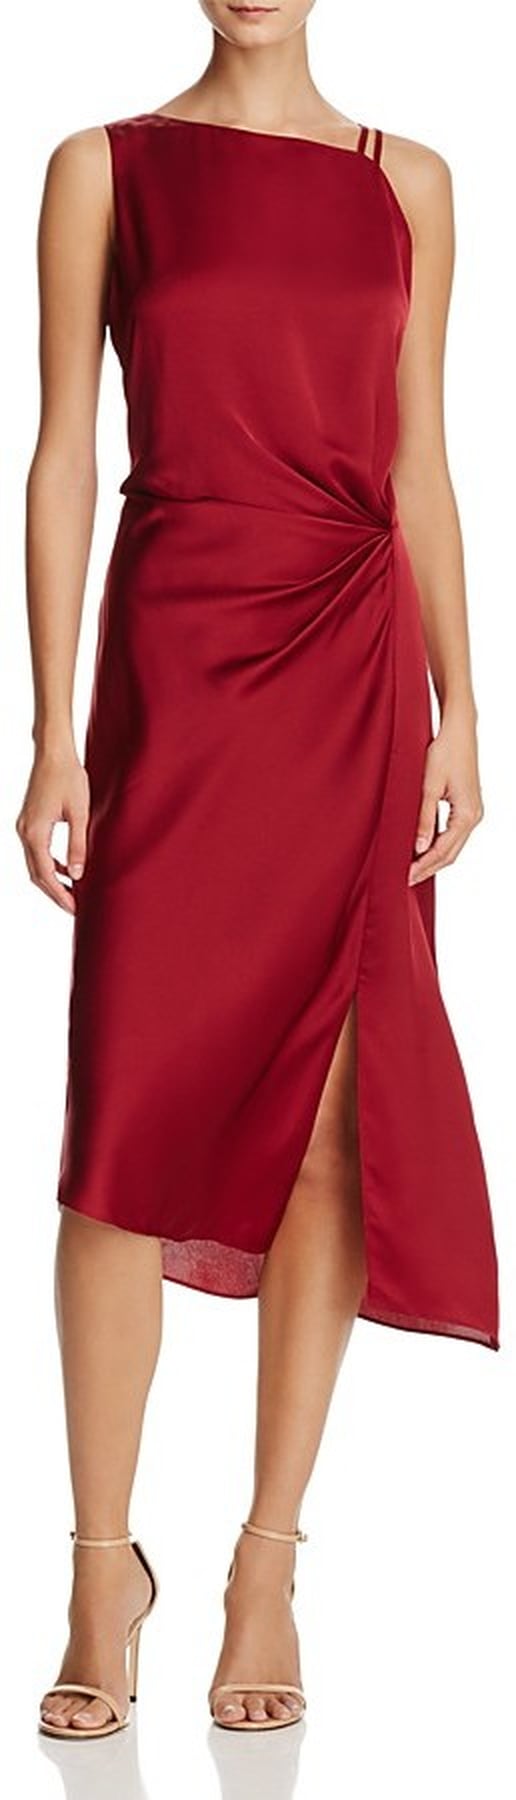 Bella Hadid Red One Shoulder Dress | POPSUGAR Fashion